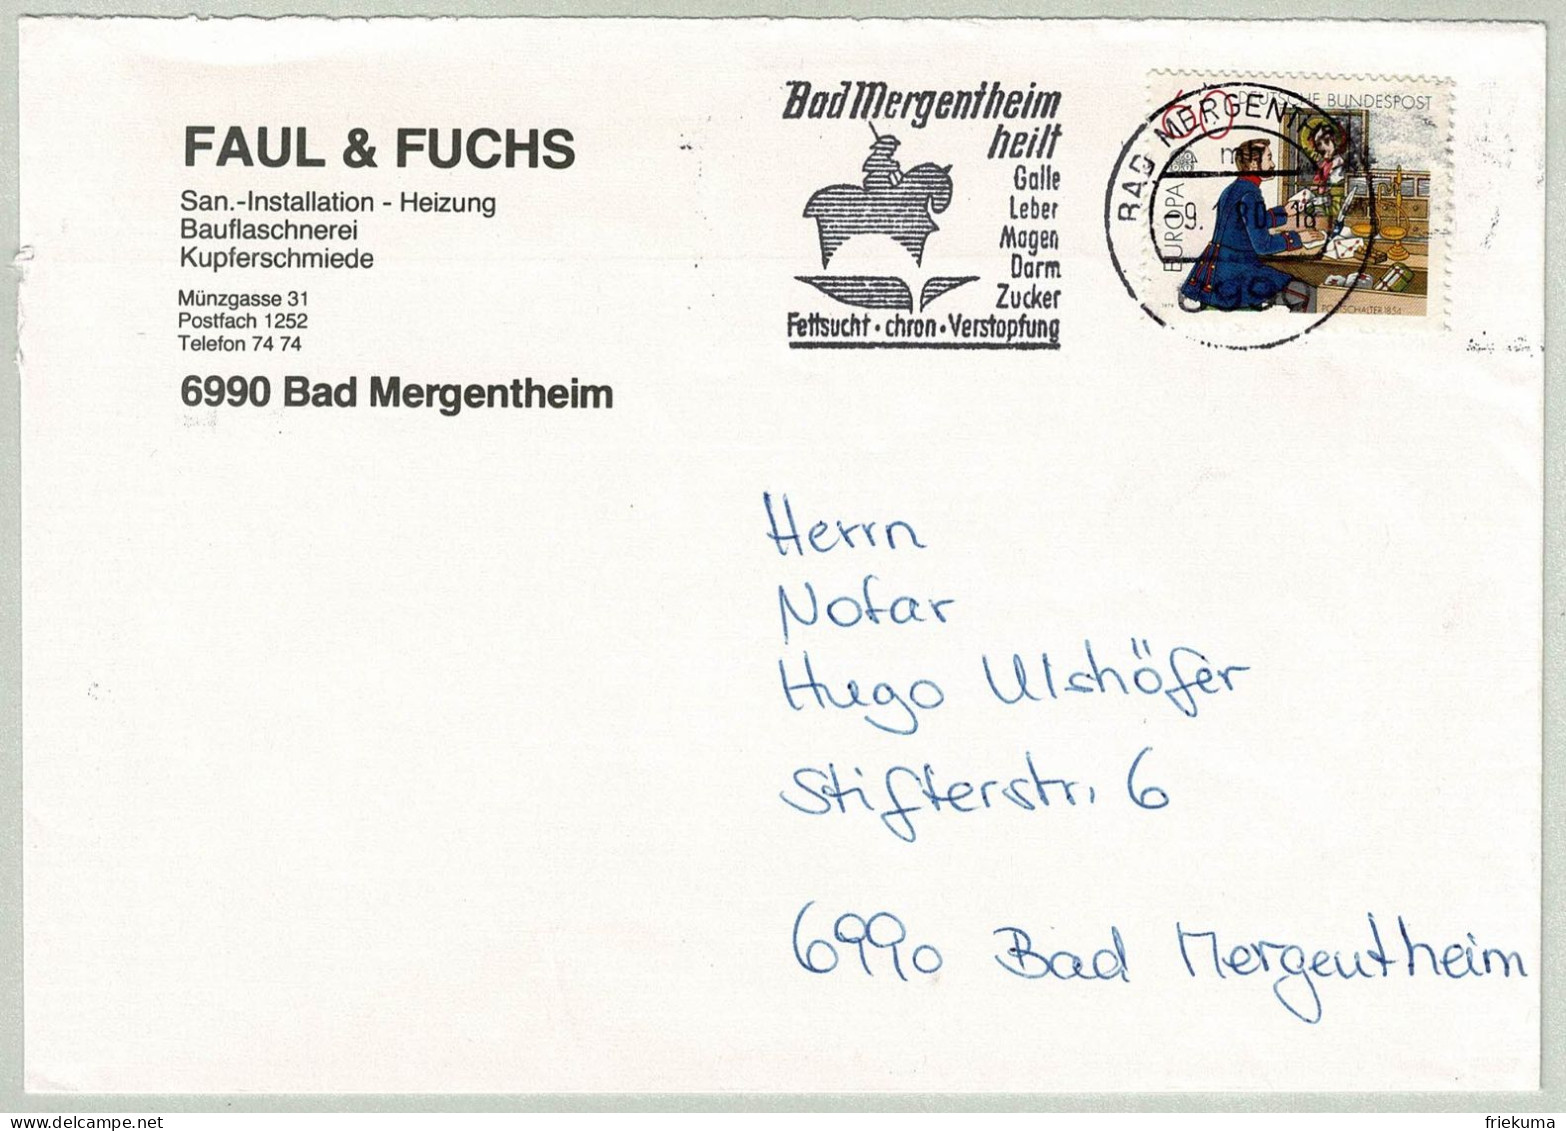 Deutsche Bundespost 1980, Brief Bad Mergentheim, Galle, Leber, Magen, Darm, Zucker, Fettsucht, Verstopfung - Kuurwezen